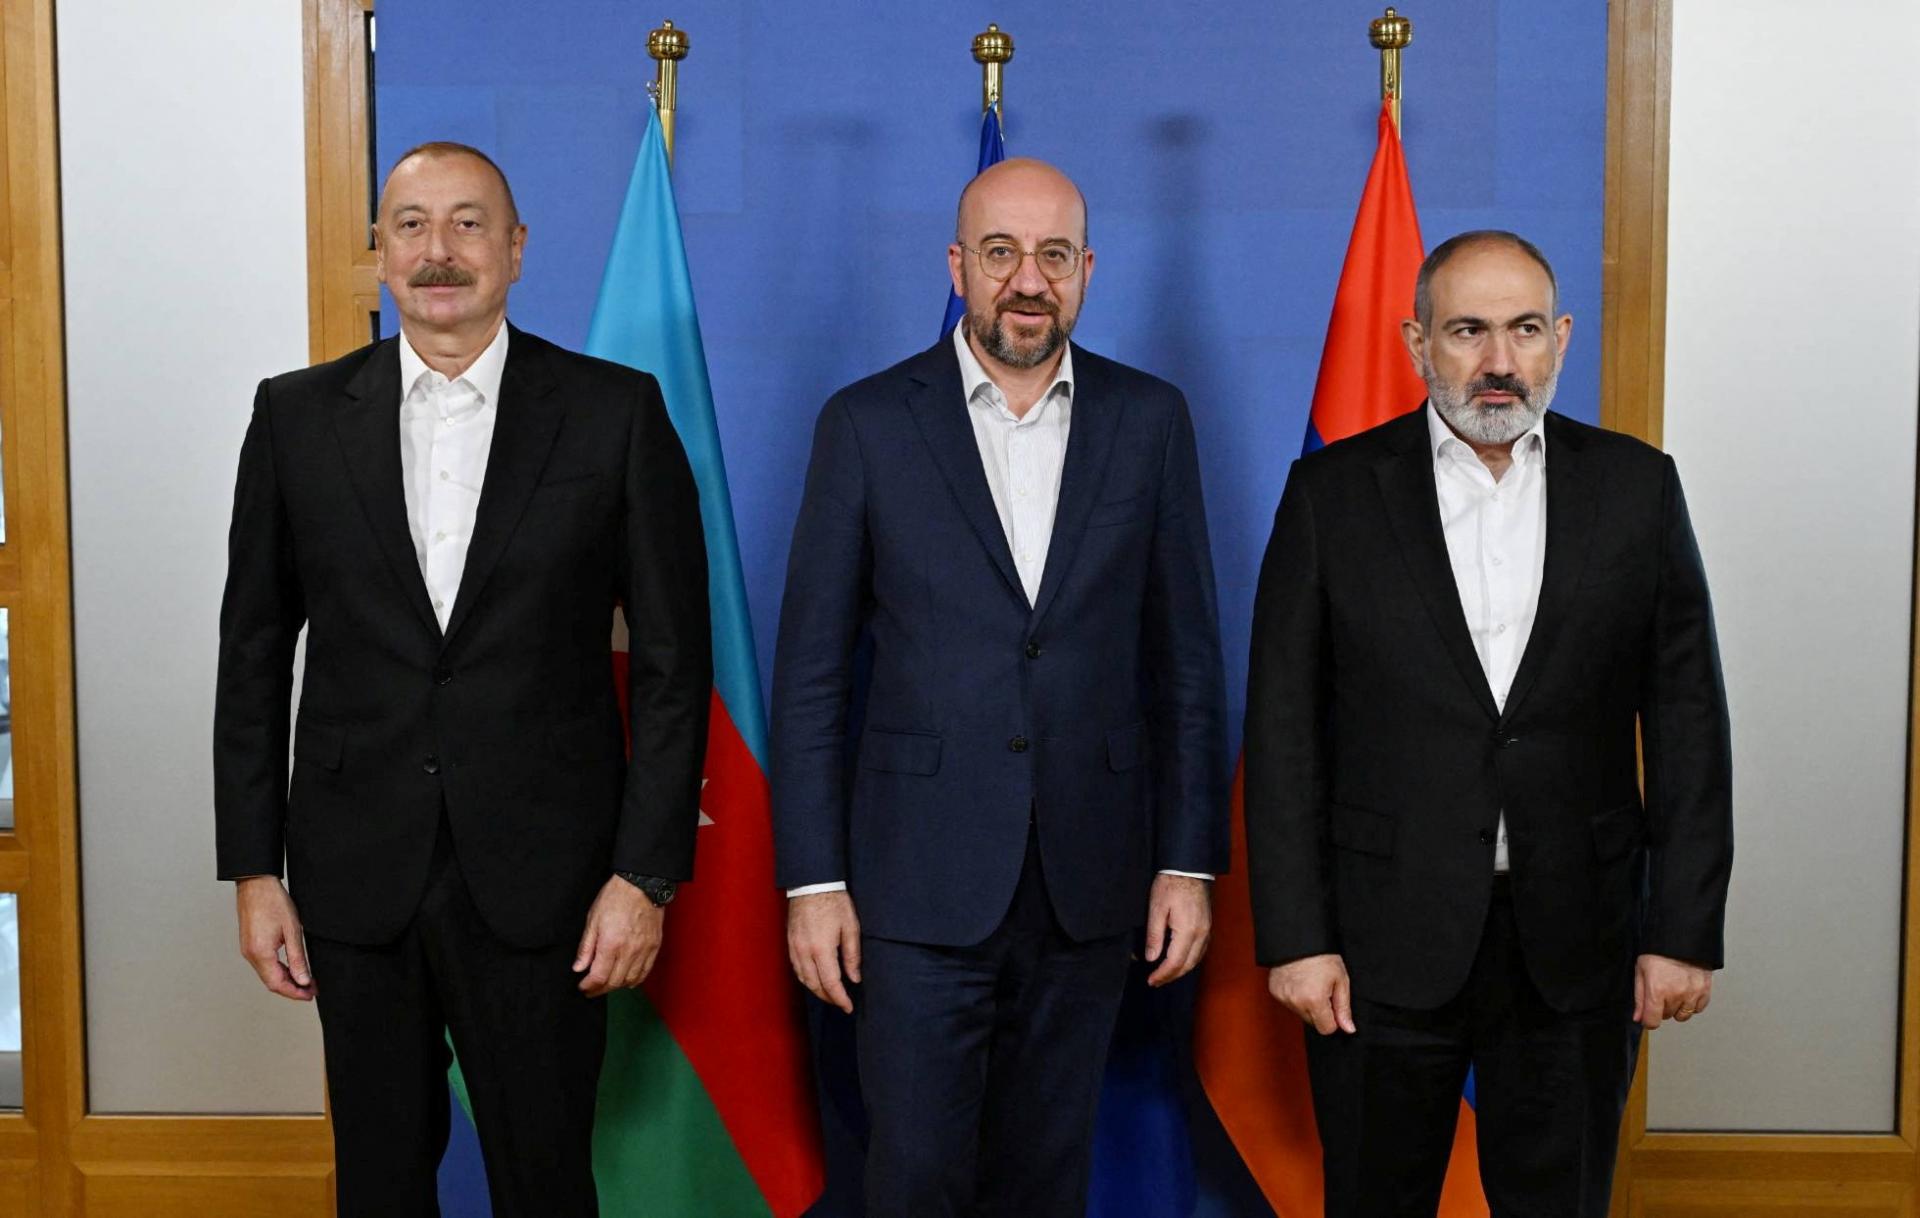 Vojna s Azerbajdžanom je bez mierovej dohody pravdepodobná, tvrdí arménsky premiér